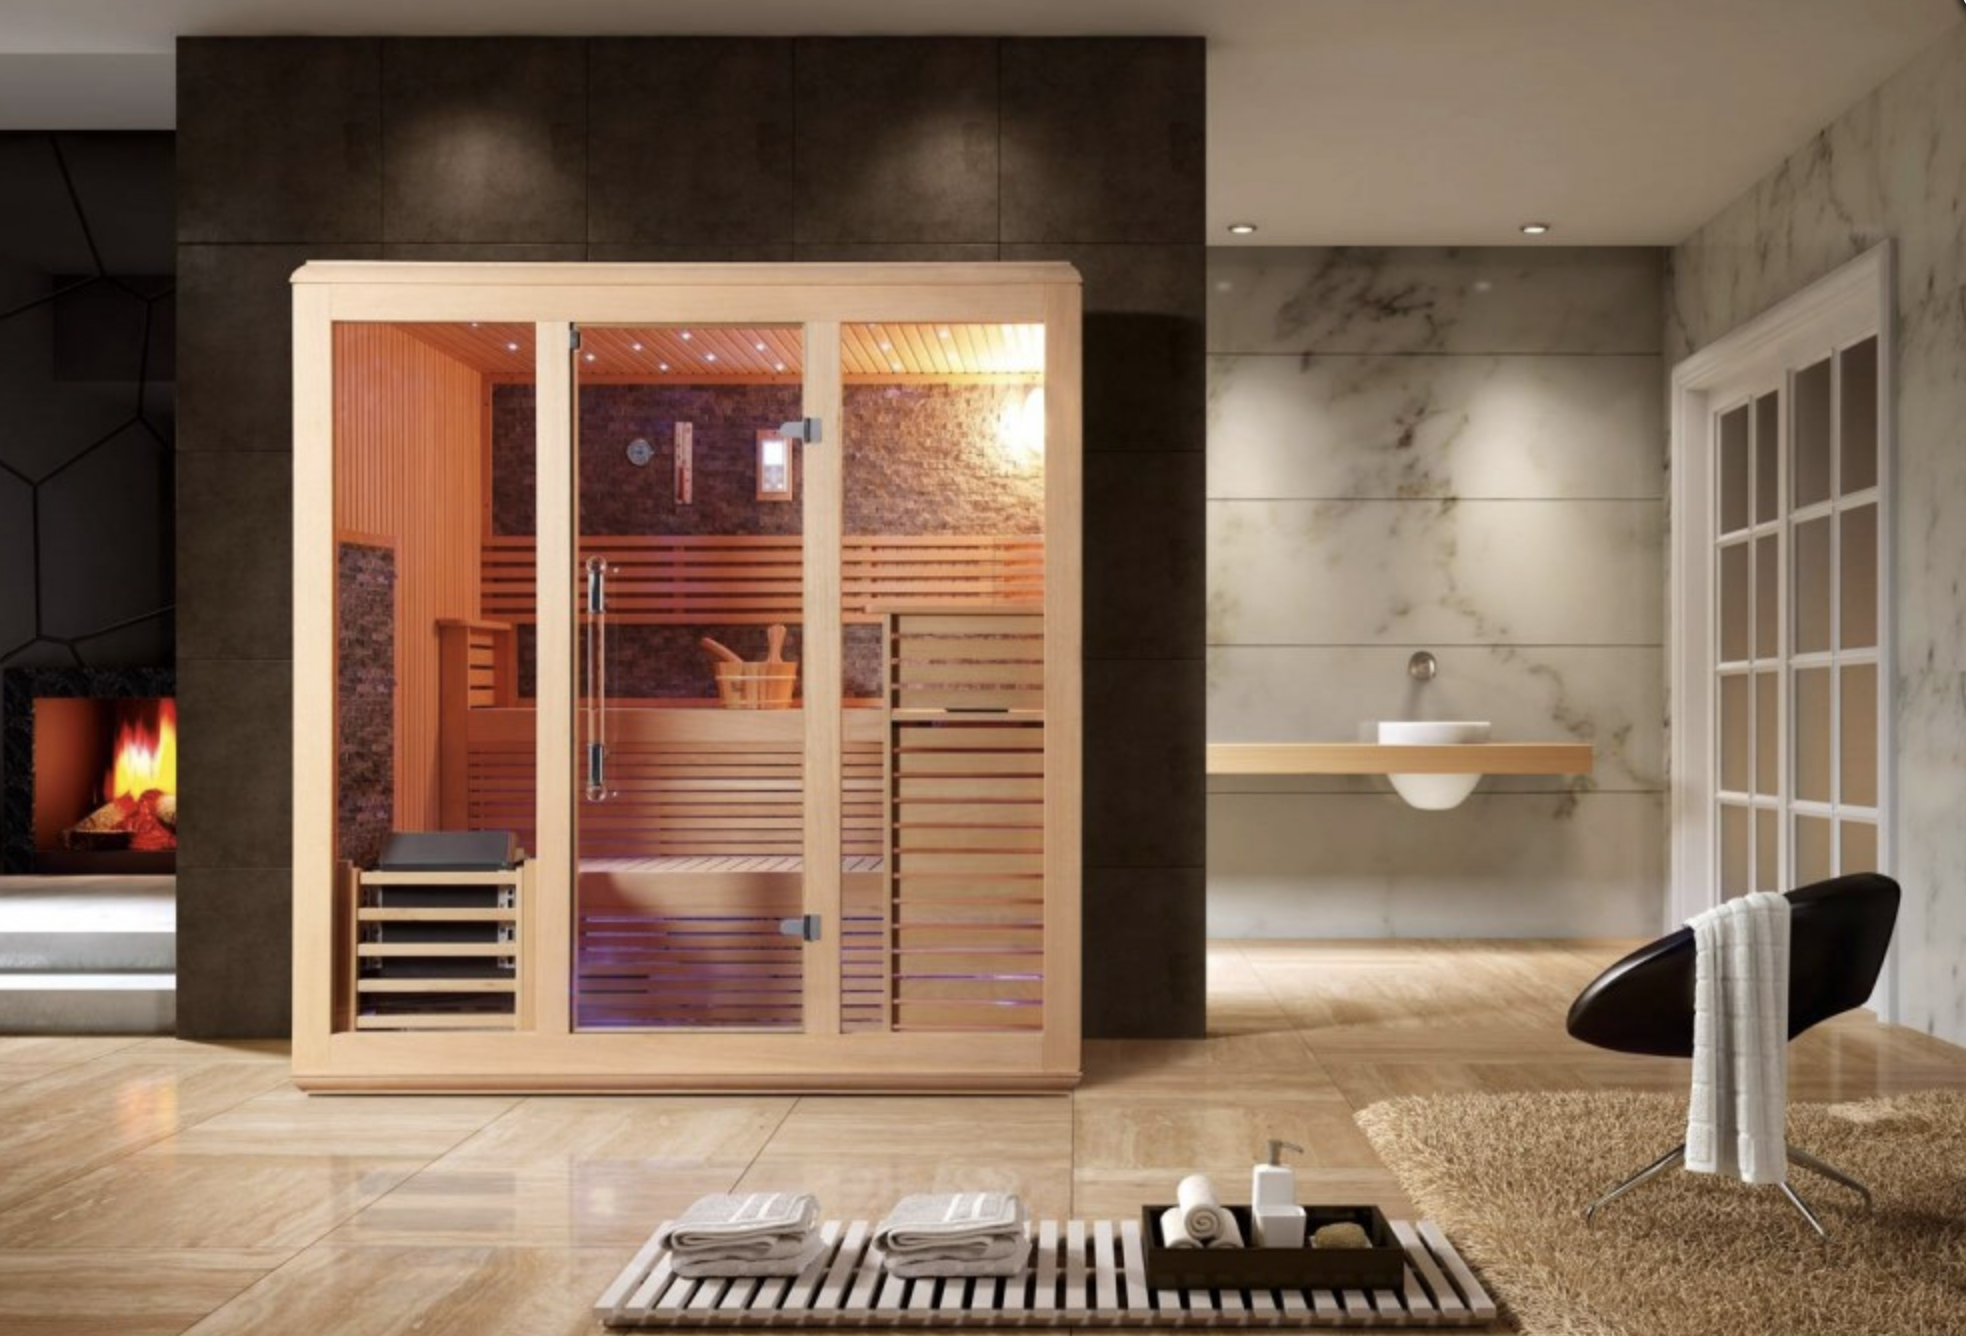 Los 10 mejores beneficios de la sauna de infrarrojos